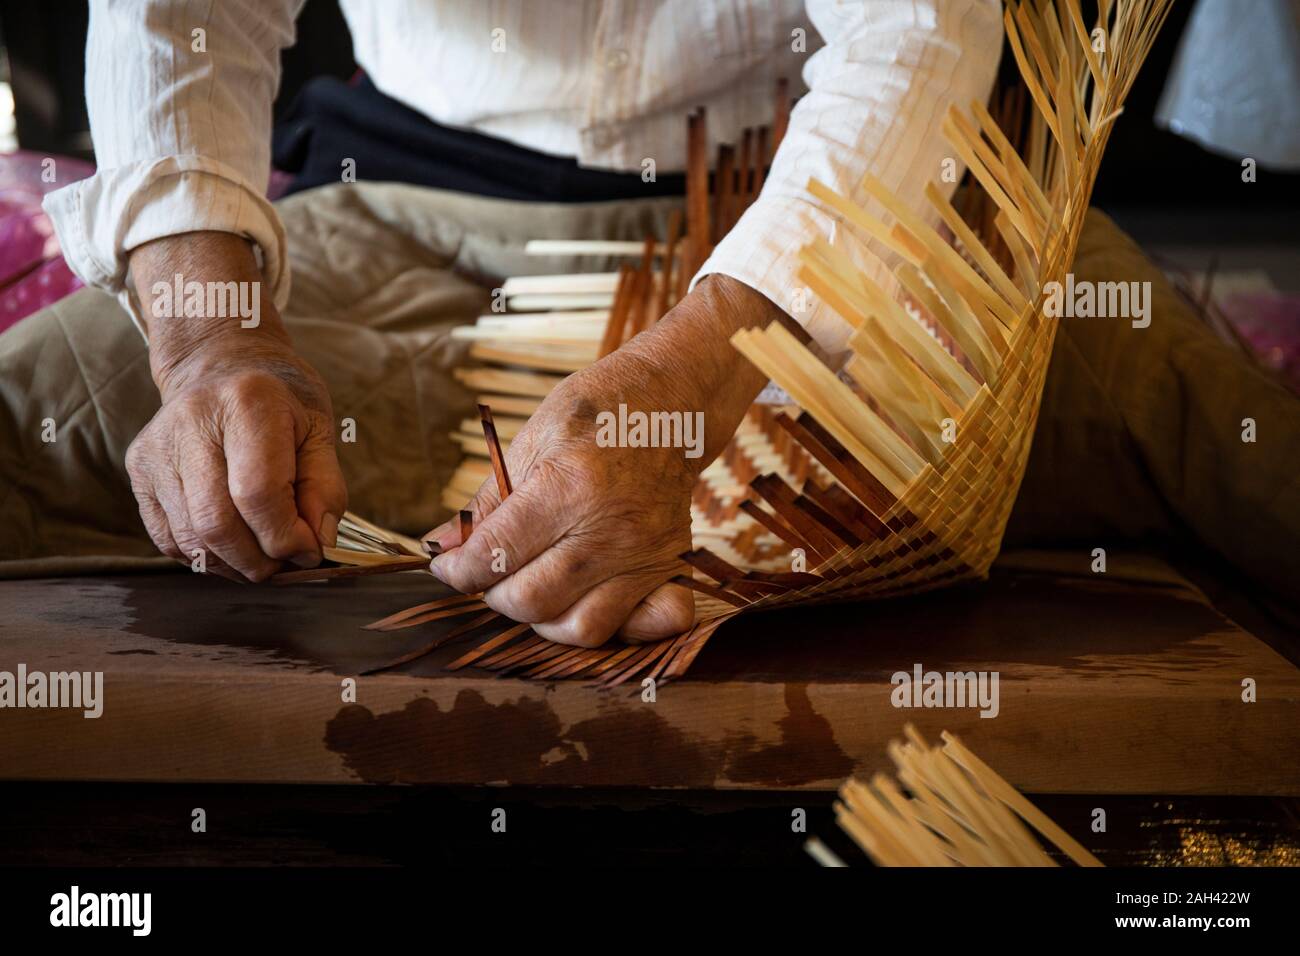 Japan, Takayama, Craftsman making baskets in workshop Stock Photo